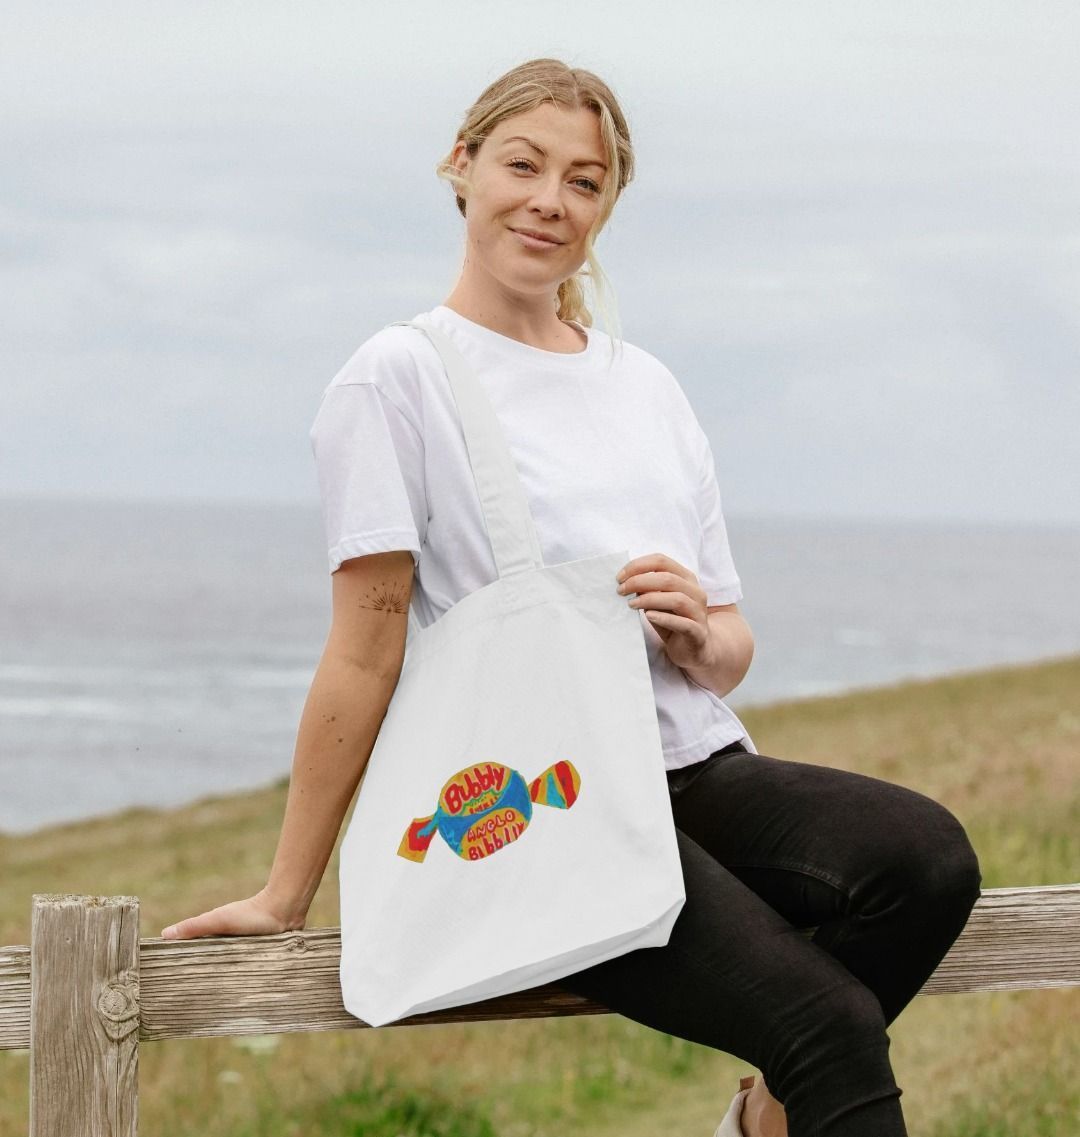 blowin' big bubbles organic tote bag - Printed Bag - Sarah Millin